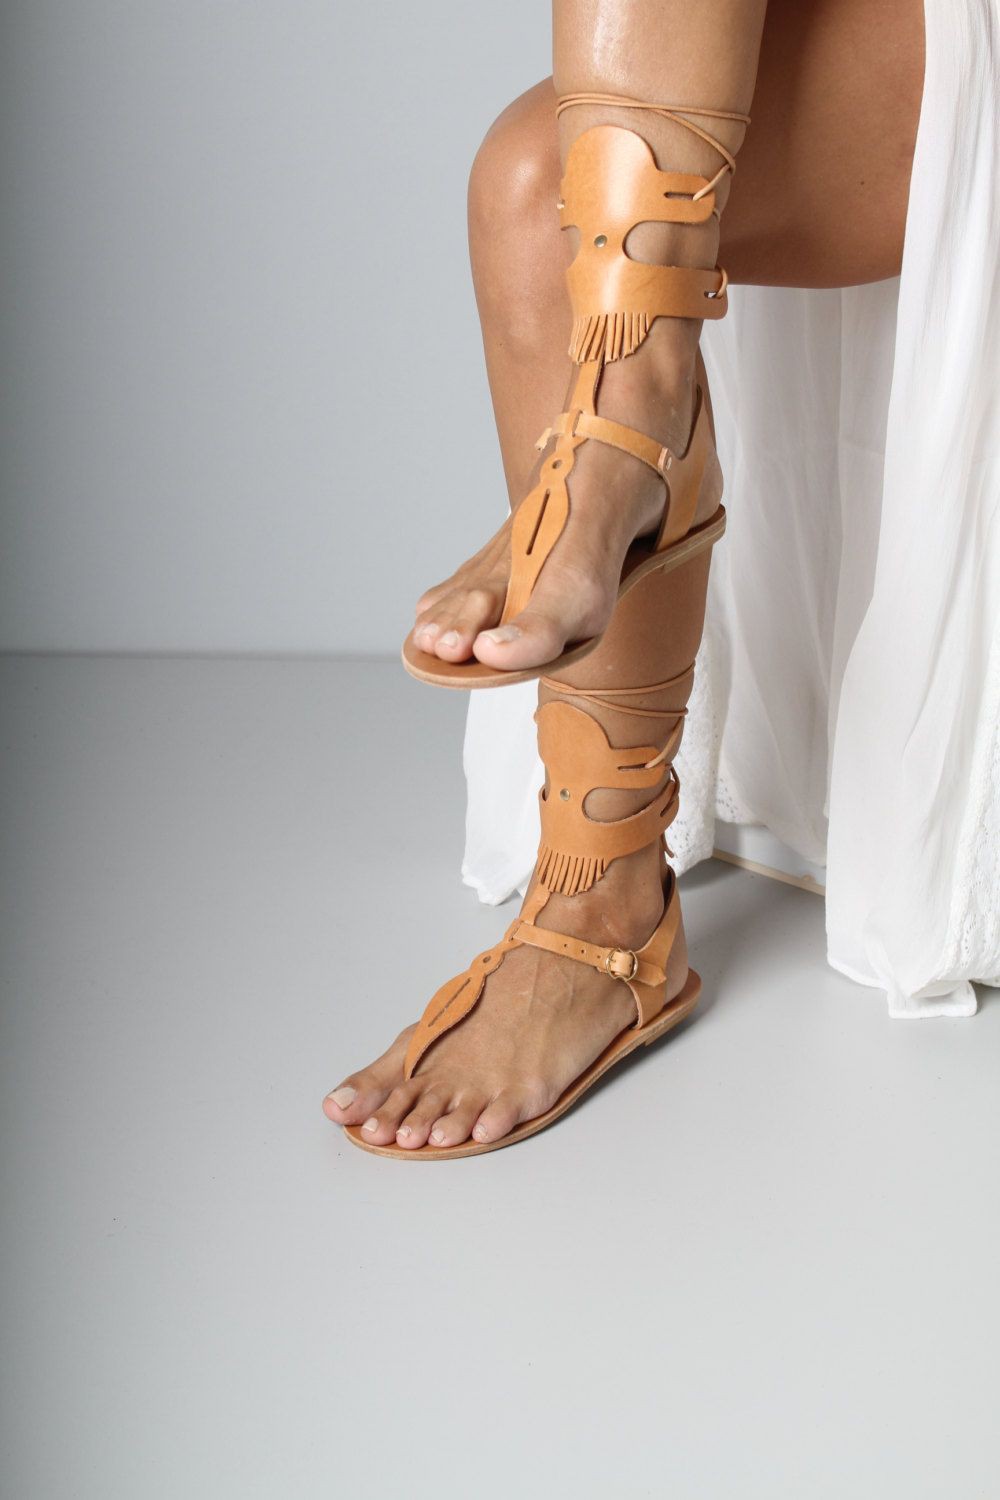 Traje de sandalias de gladiador, sandalias griegas antiguas, lavandería china: Piso de ballet,  Sandalias de gladiador vestidos  